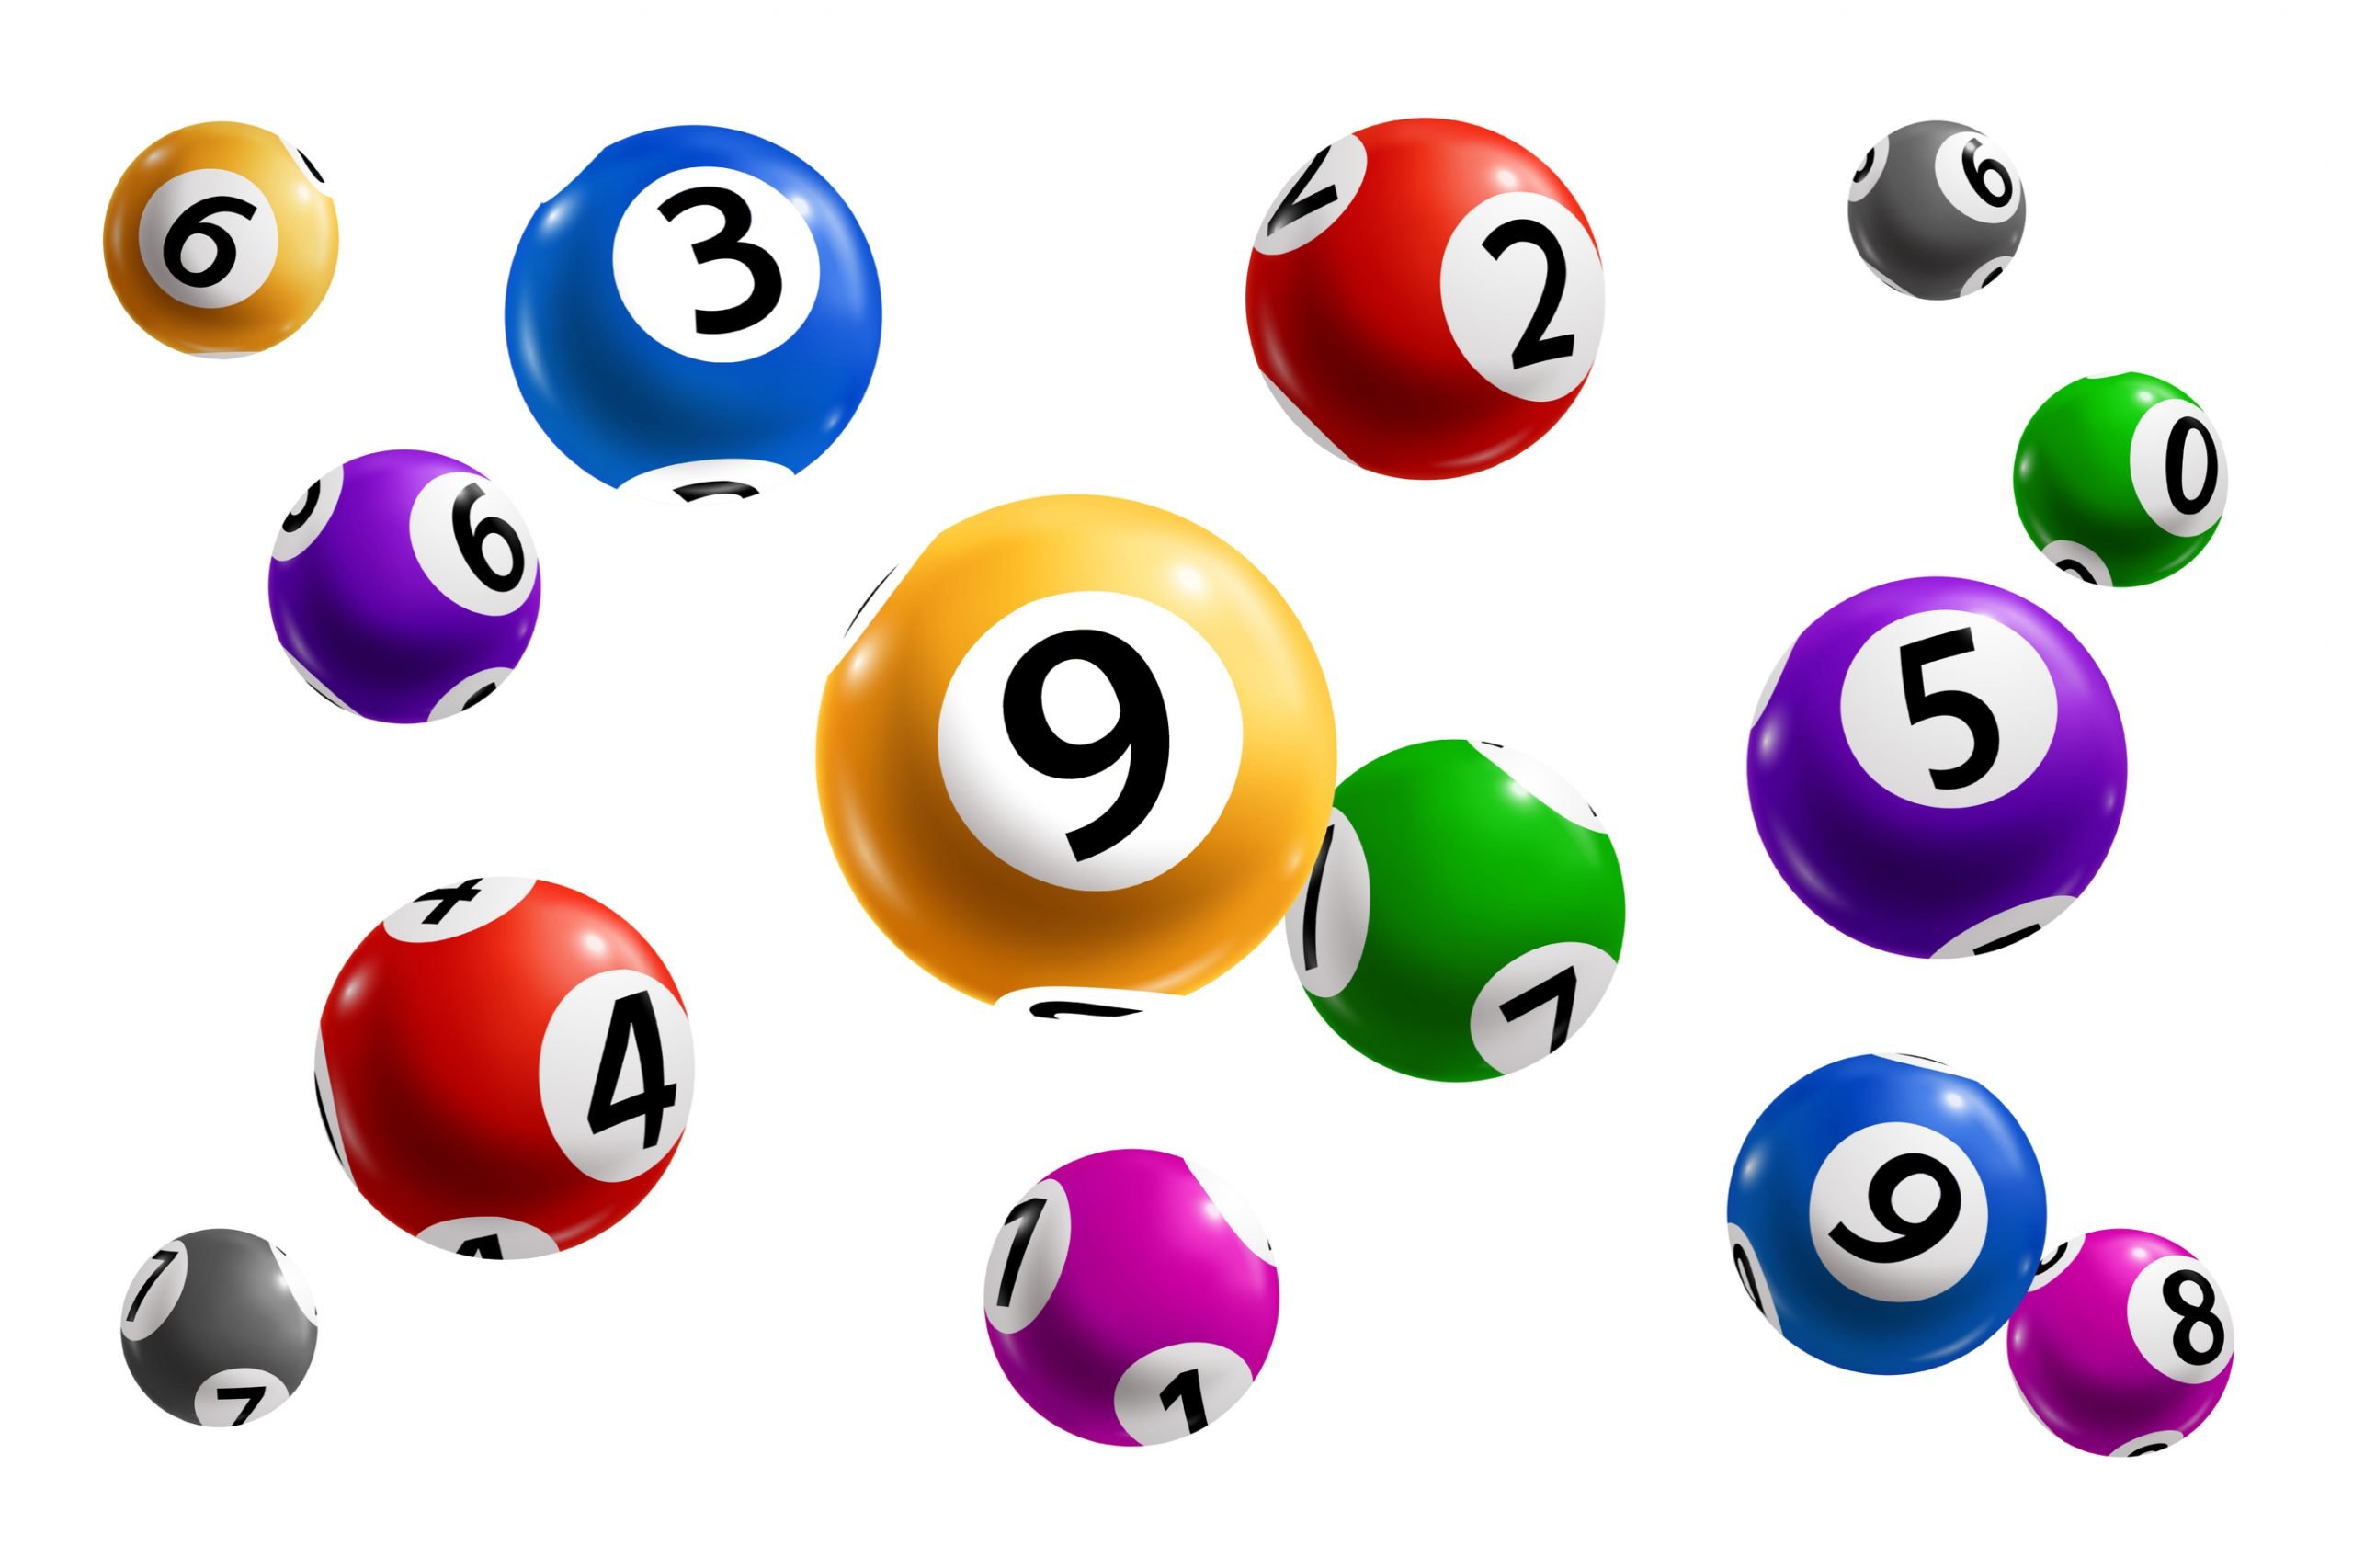 Balls rng. Лотерейные шары. Лотерея шары. Лотерейные шары на прозрачном фоне. Лотерейные шары с цифрами.